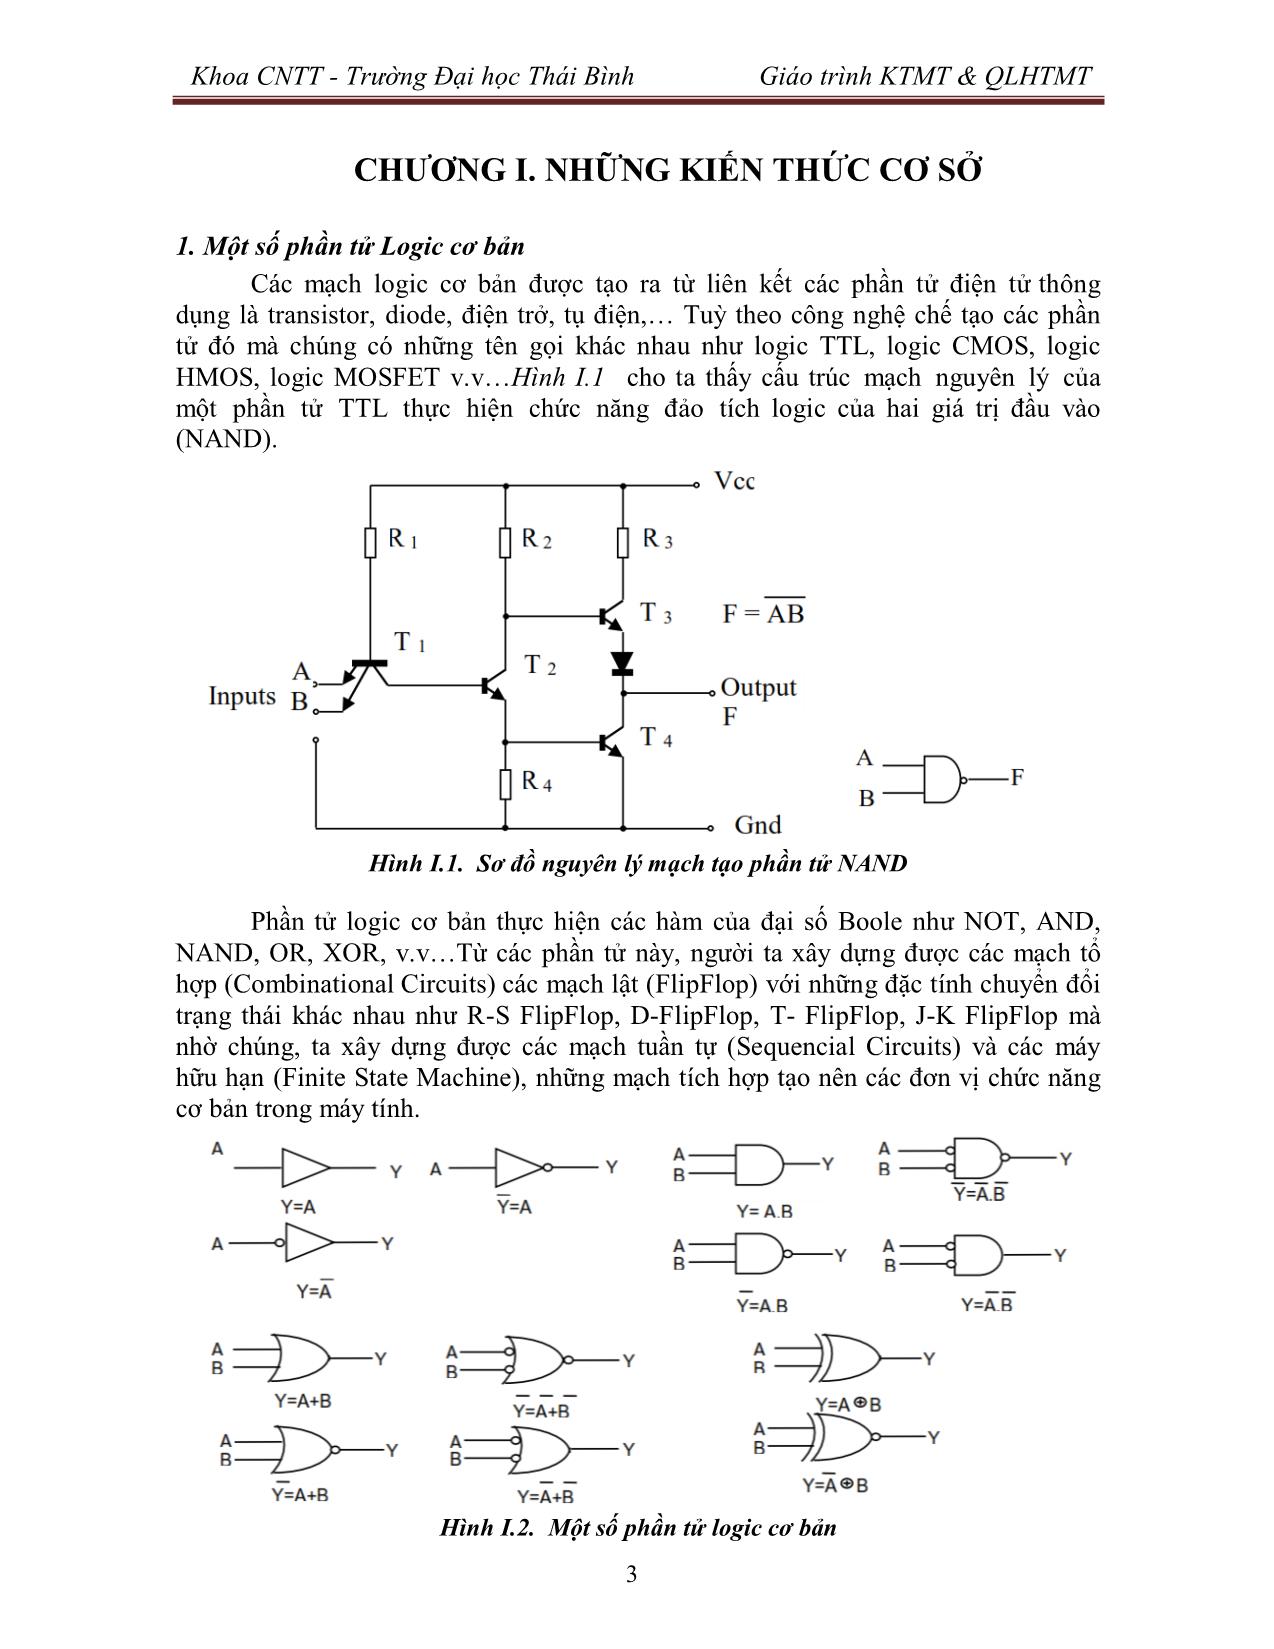 Giáo trình Kiến trúc máy tính & Quản lý hệ thống máy tính (Phần 1) trang 4